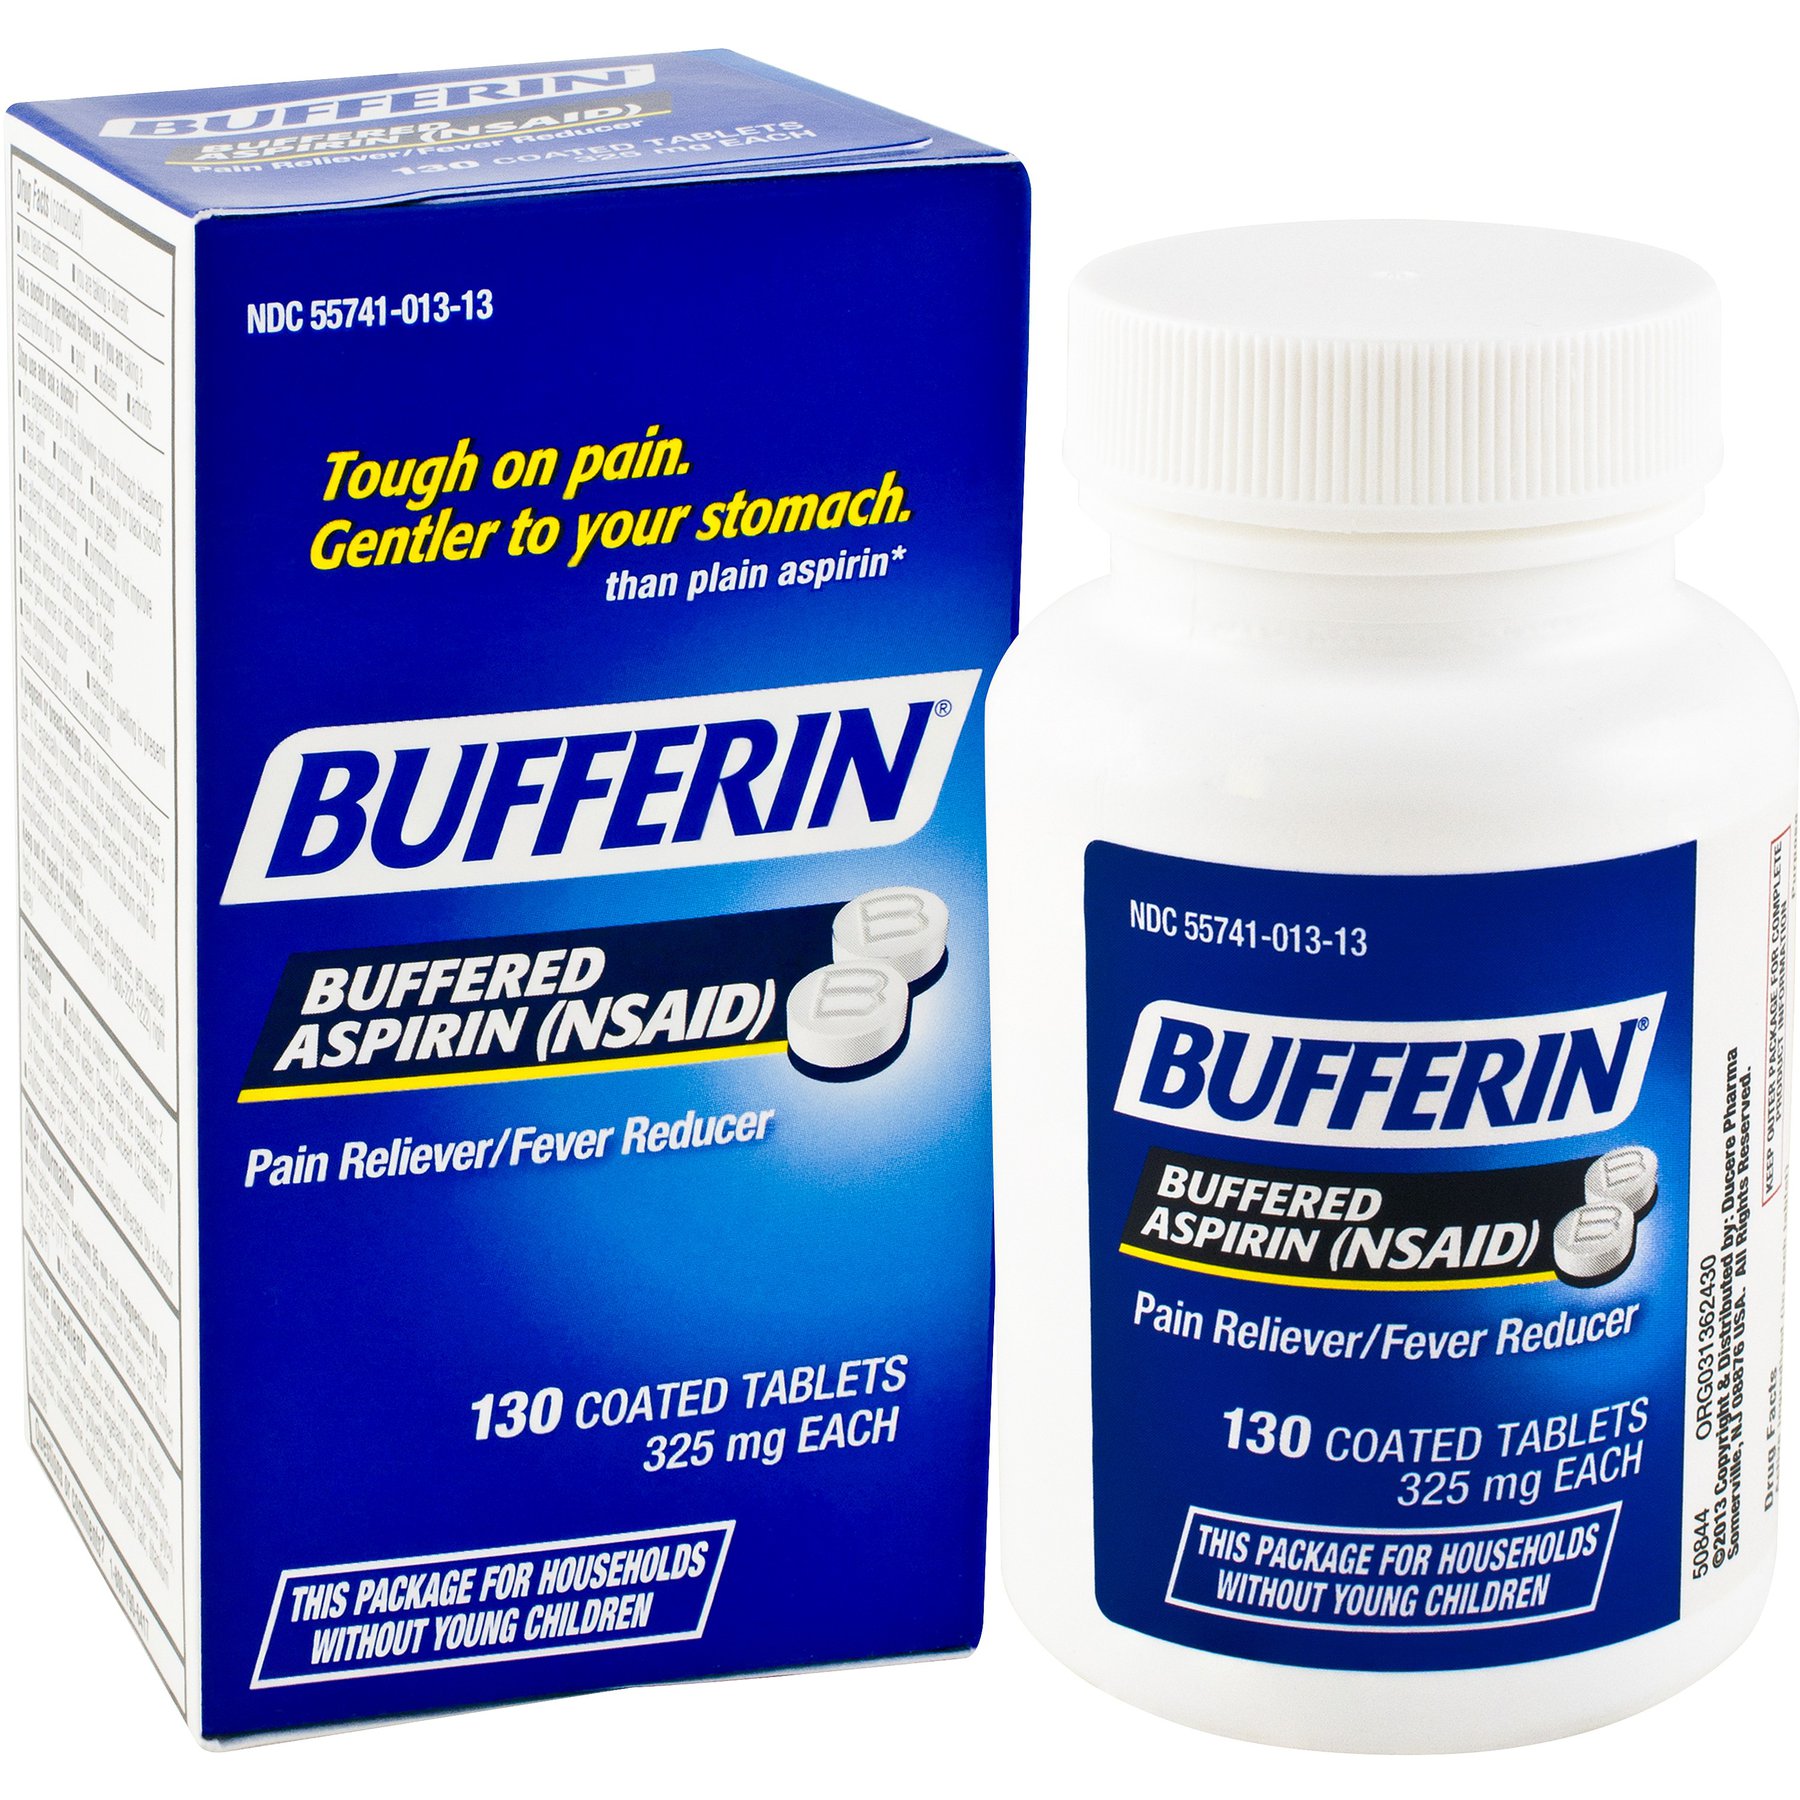 Thuốc Buffered Aspirin: Công dụng, chỉ định và lưu ý khi dùng